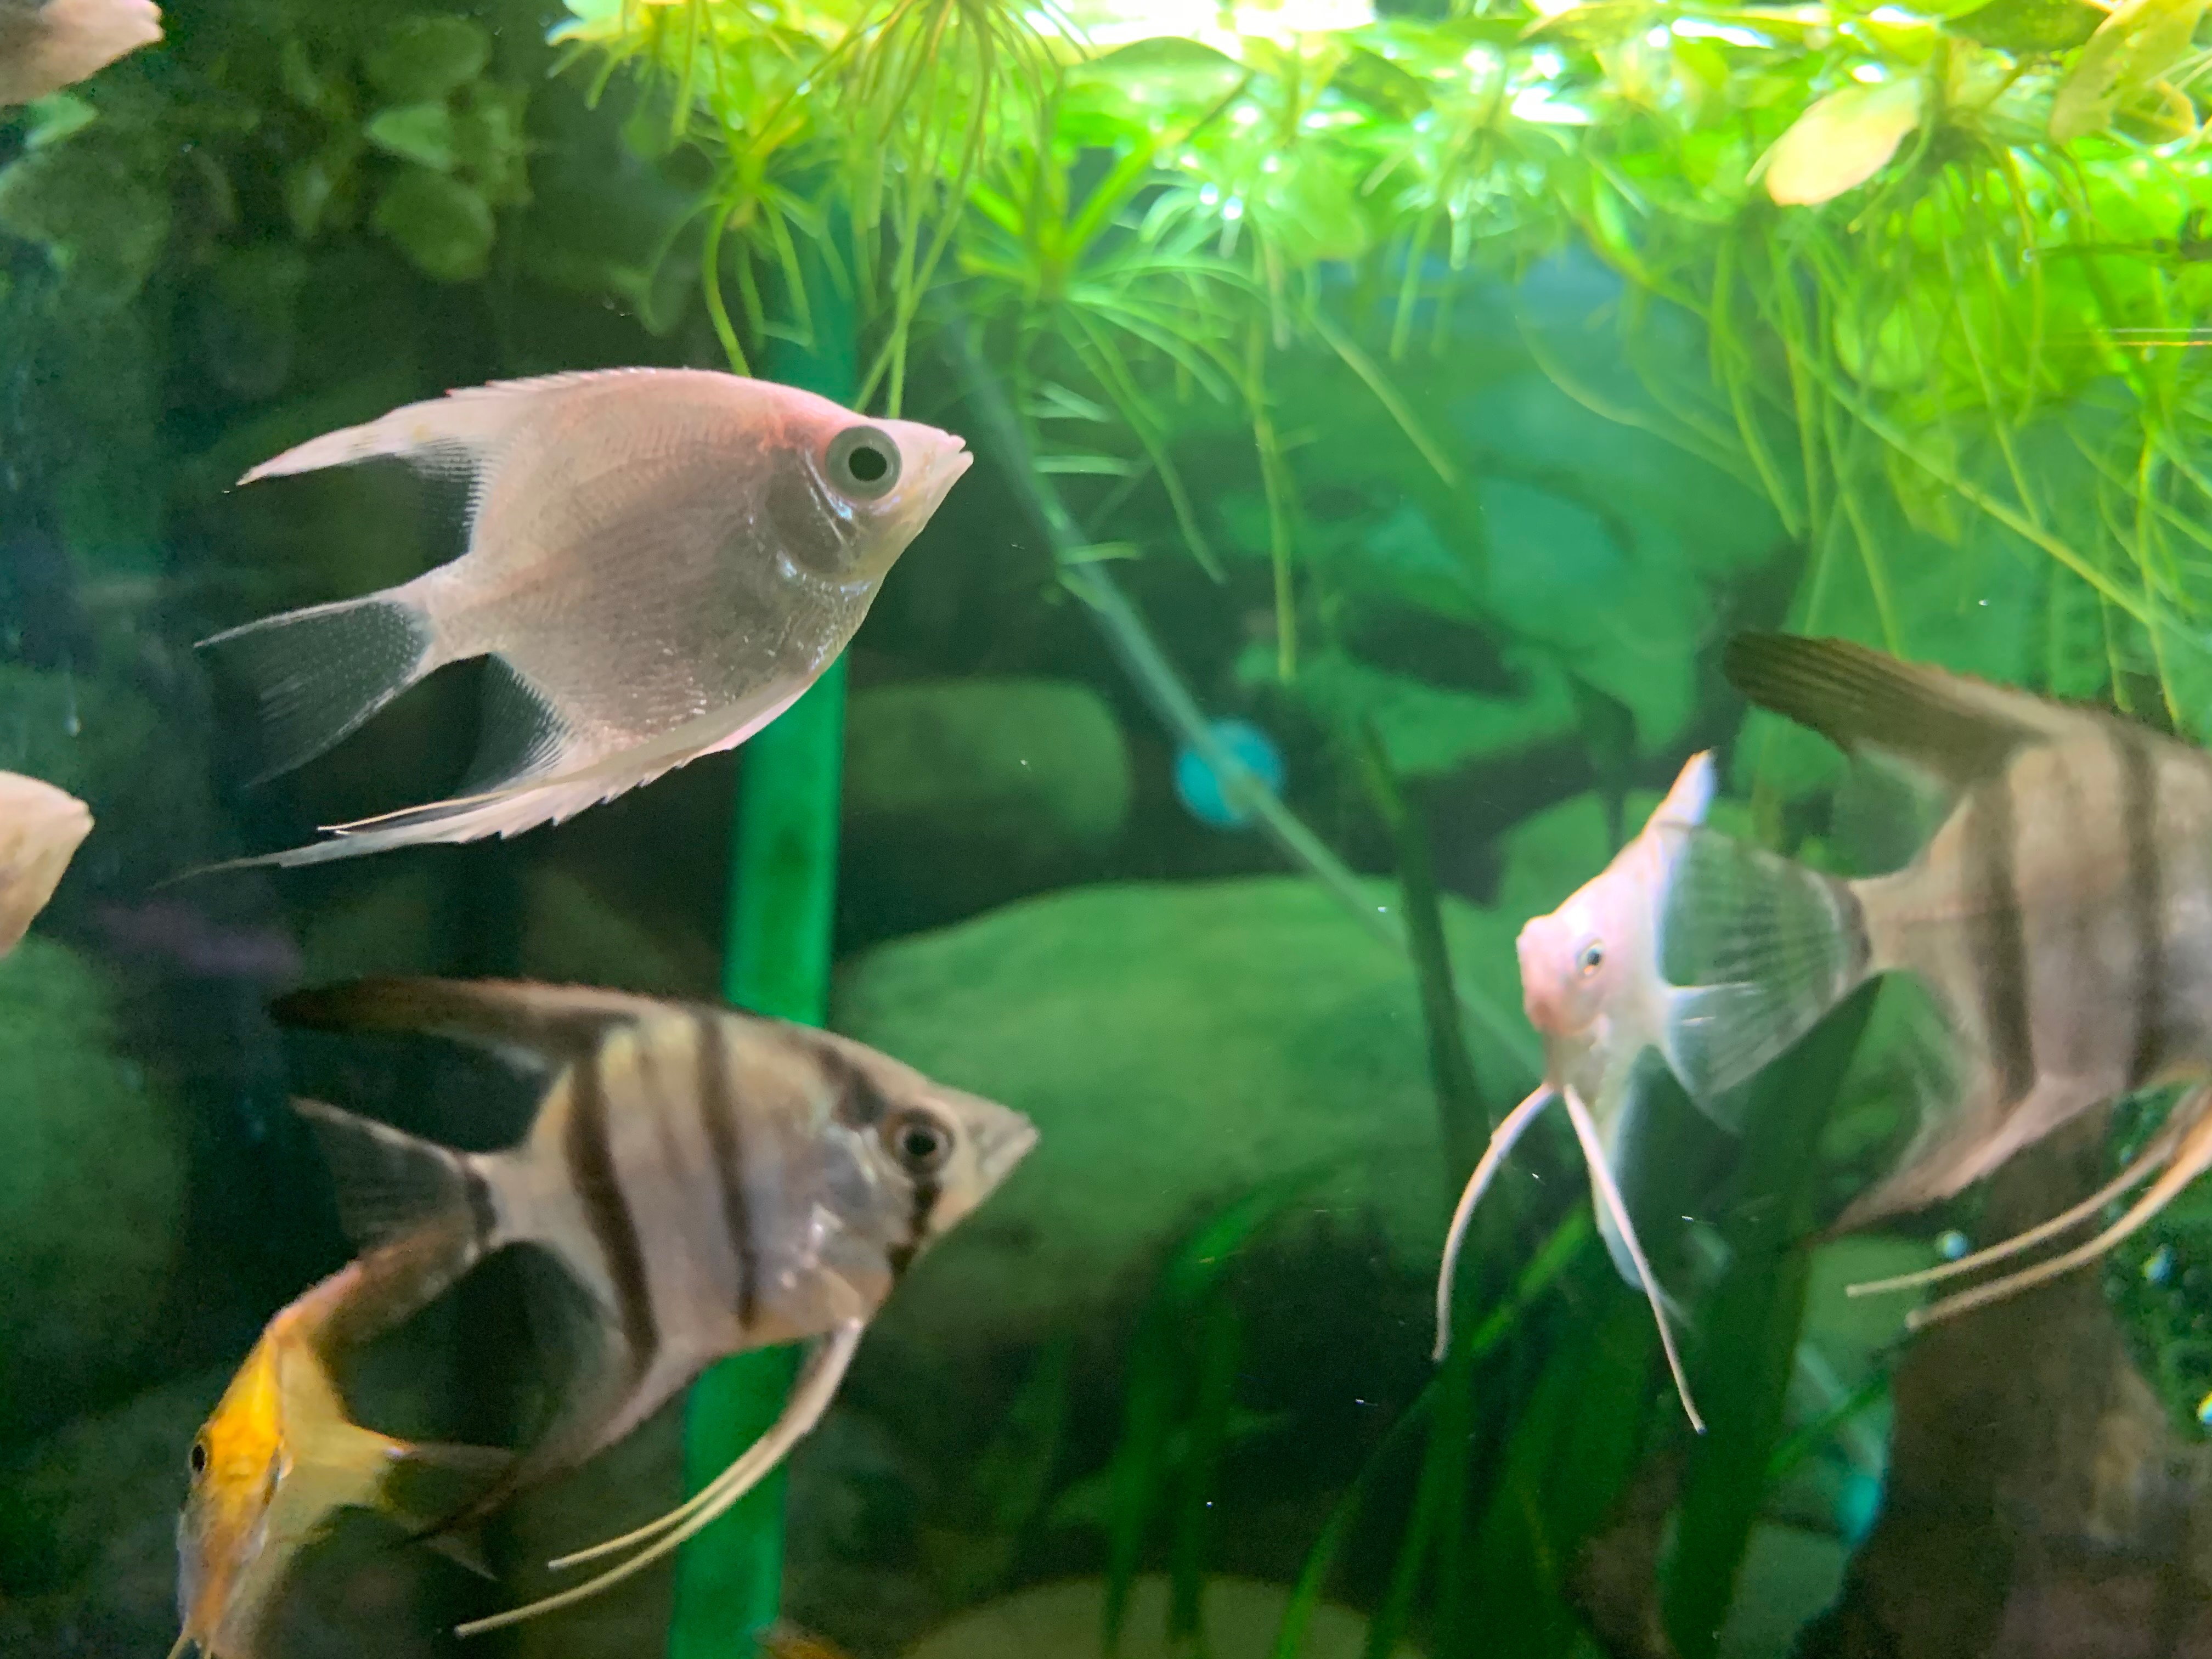 blogi - kuolleiden kalojen akvaario, happea ideakulttuurille